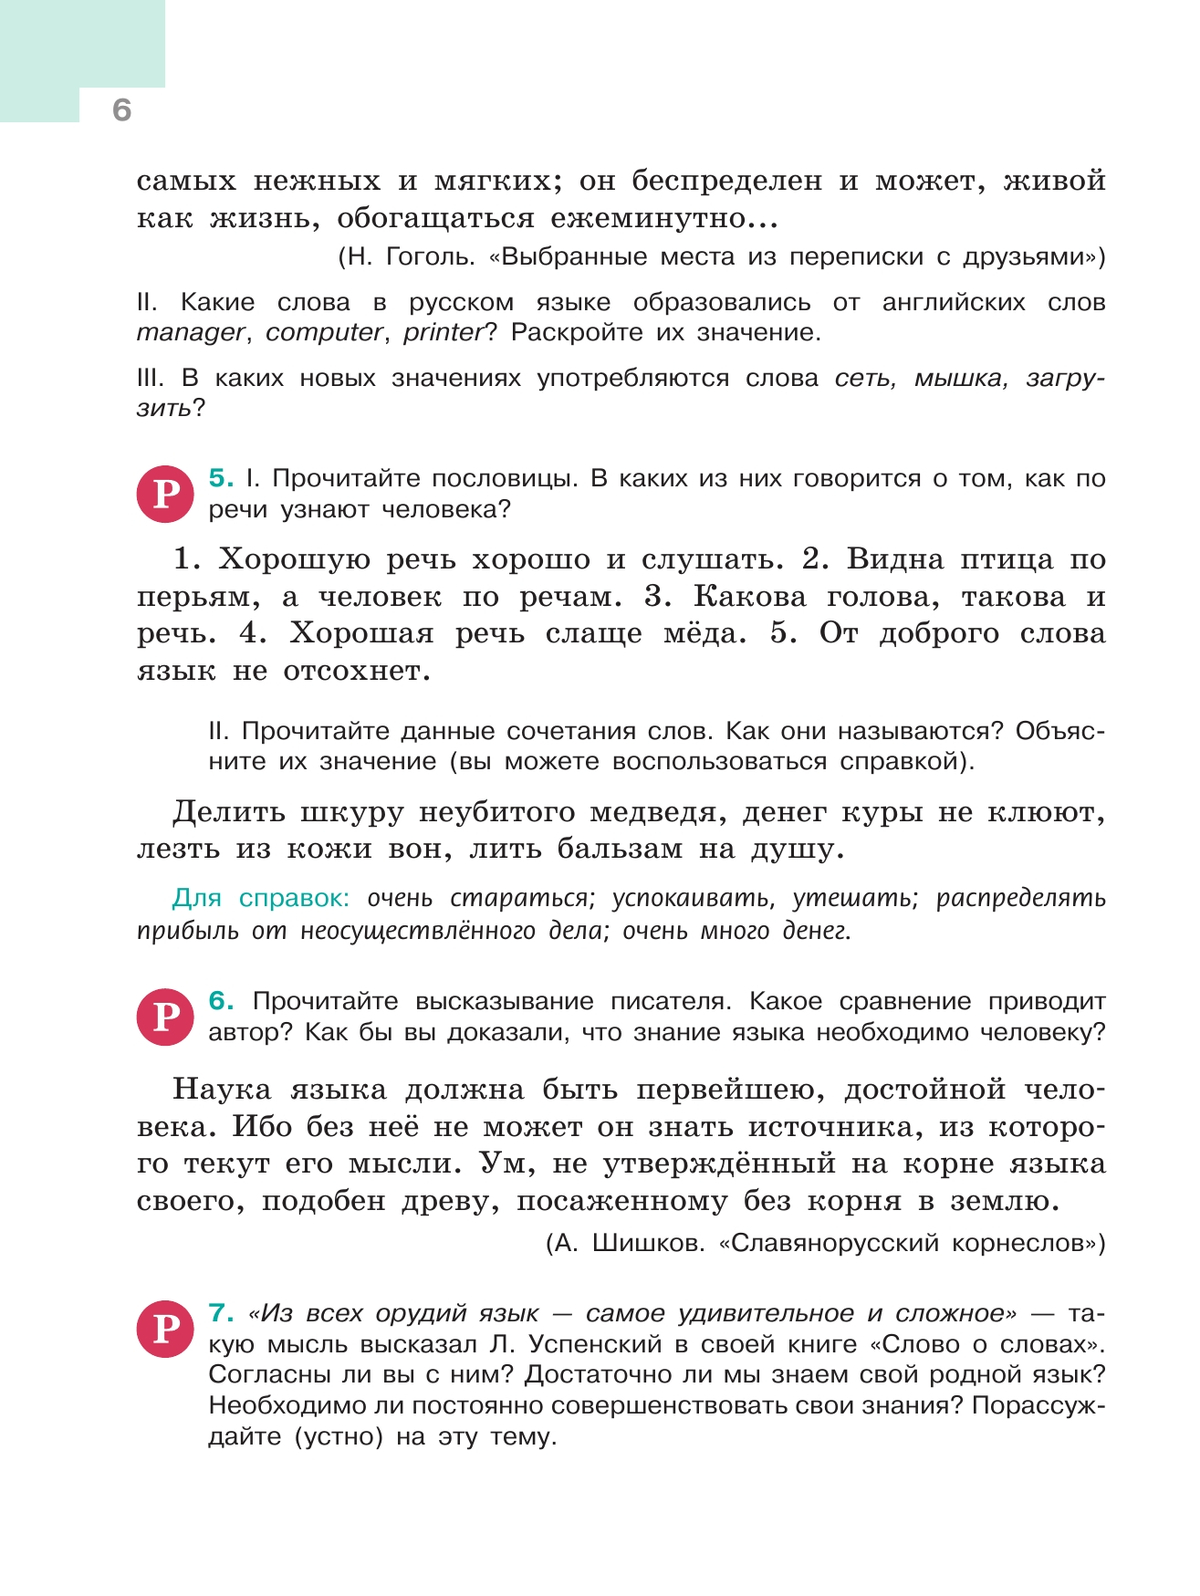 Русский язык. 5 класс. Учебник. В 2-х ч. Ч. 1 9